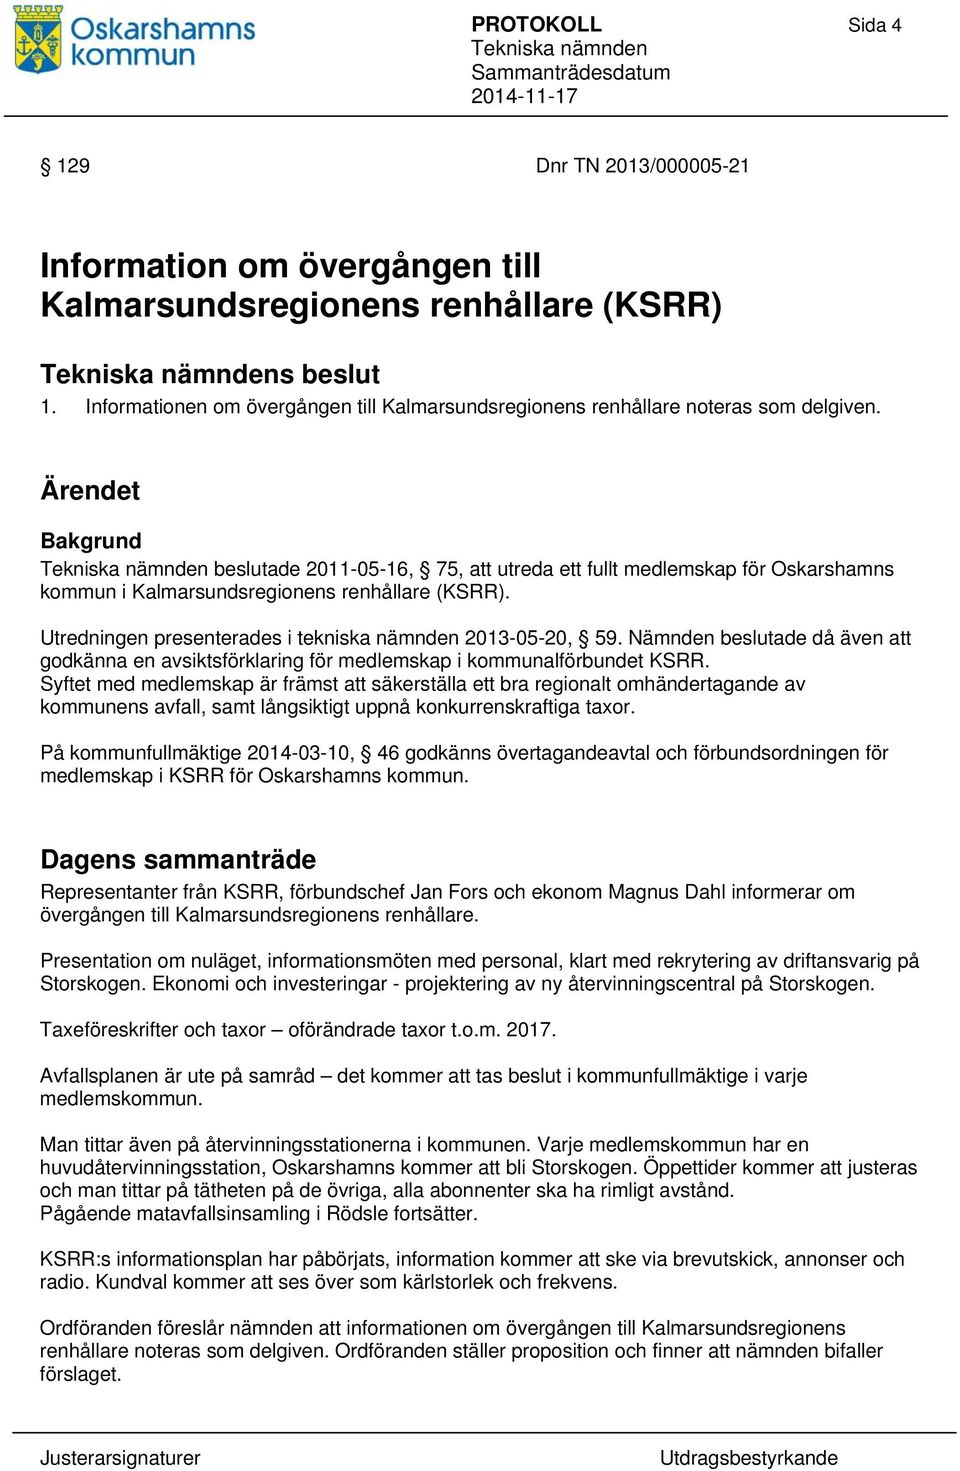 Ärendet Bakgrund beslutade 2011-05-16, 75, att utreda ett fullt medlemskap för Oskarshamns kommun i Kalmarsundsregionens renhållare (KSRR). Utredningen presenterades i tekniska nämnden 2013-05-20, 59.